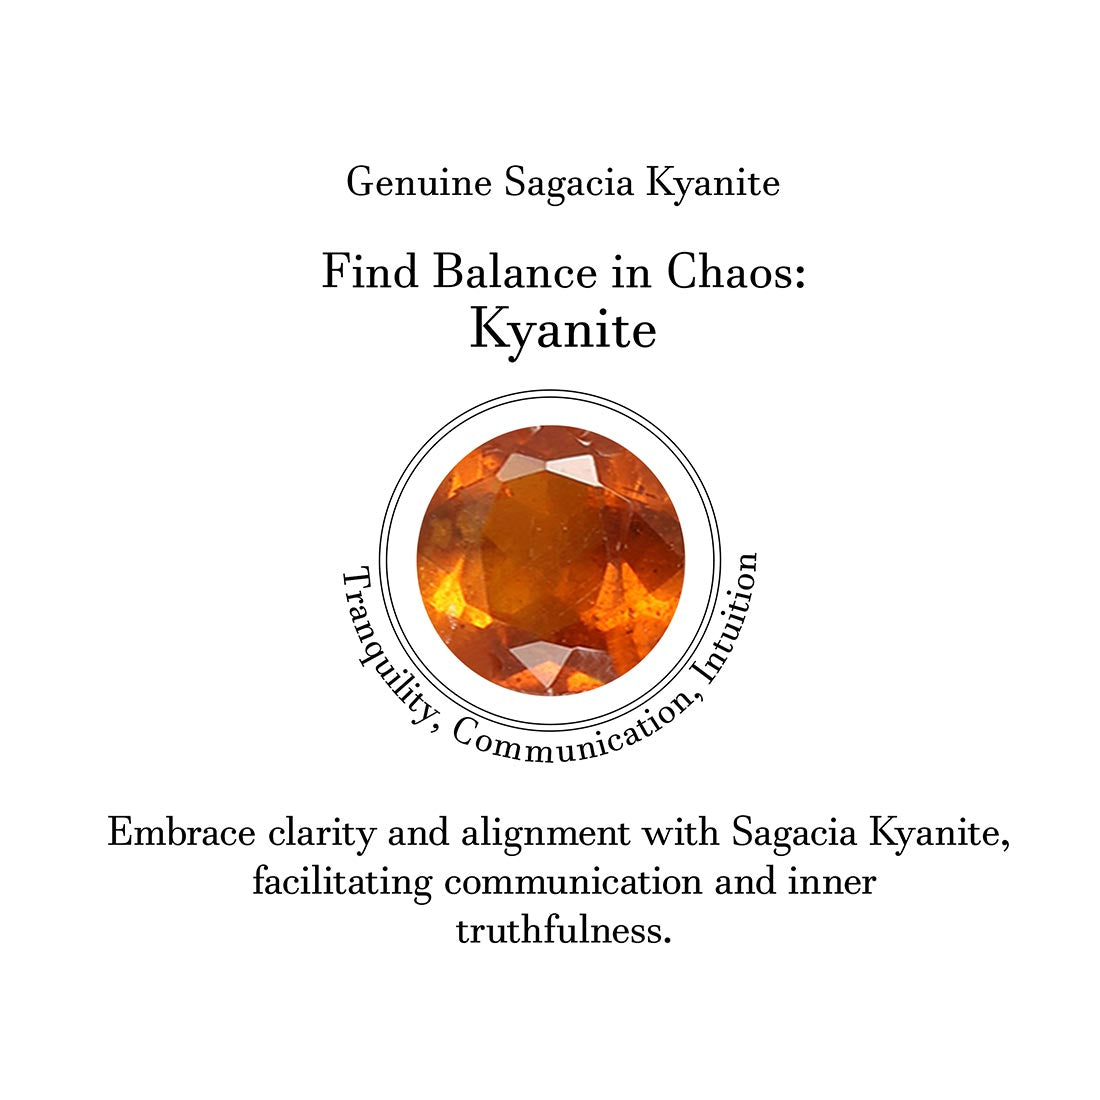 Orange Kyanite Ring-(KYN-SR-4026-O.)